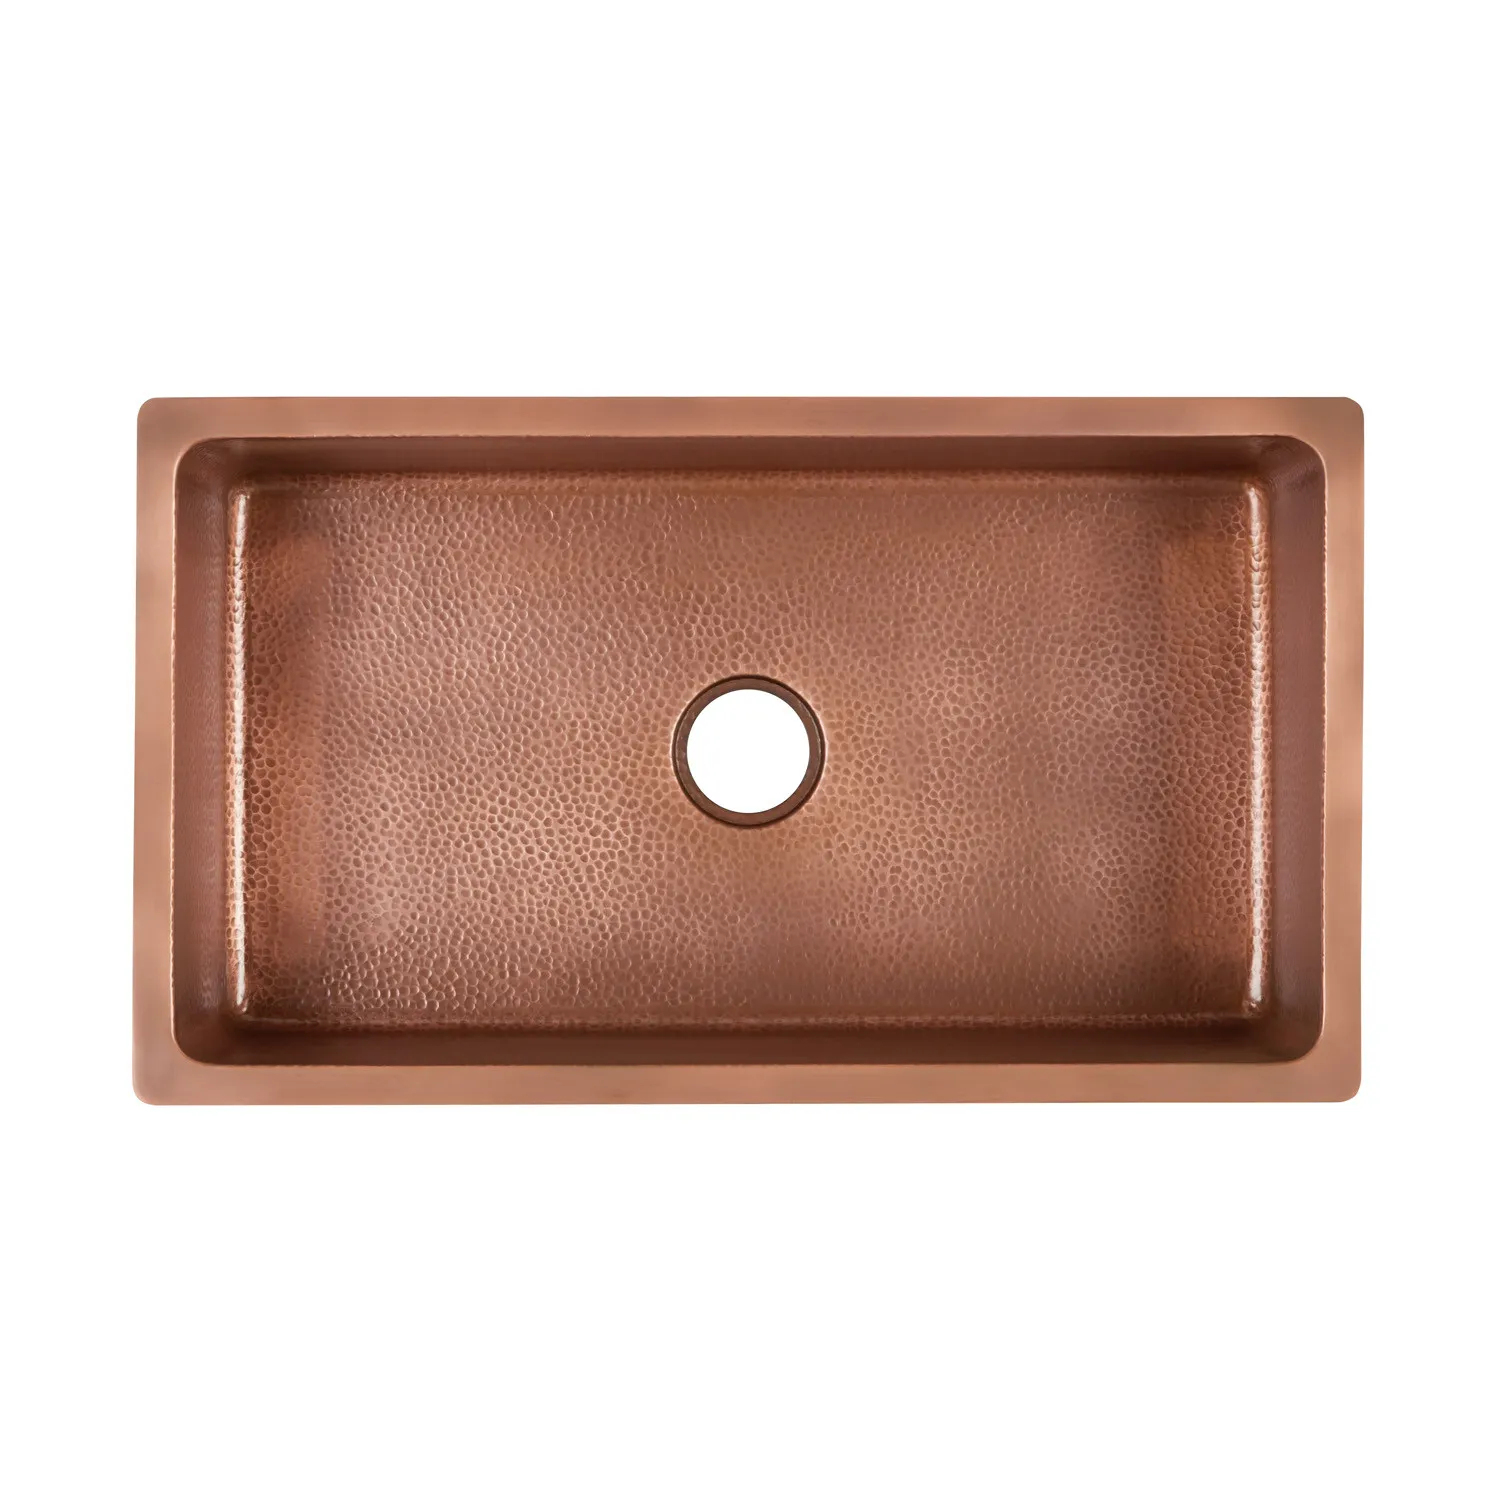 36&quot; Hammered Copper Undermount Sink - Kitchen destiné Hammered Undermount Kitchen Sink